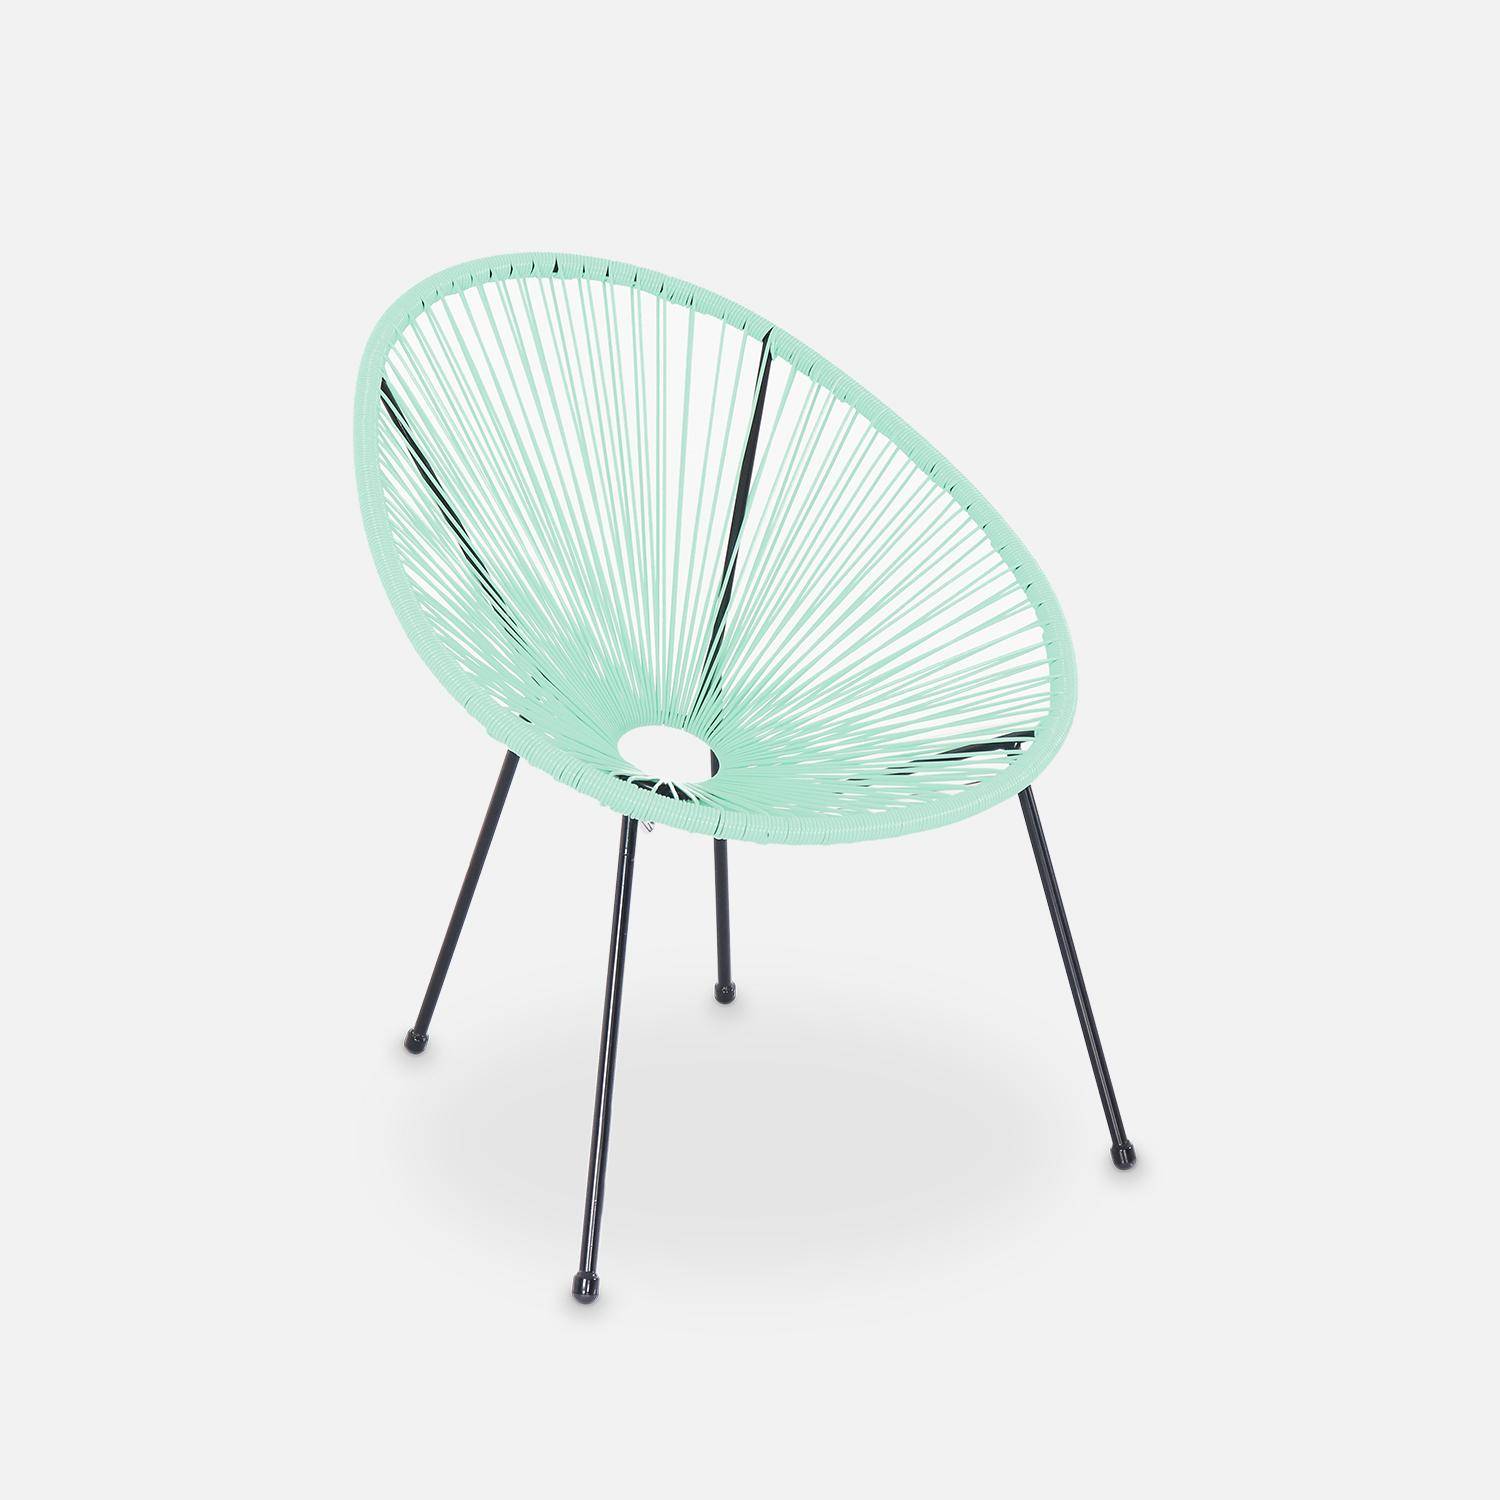 ACAPULCO stoel ei-vormig Watergroen- Stoel 4 poten retro design, plastic koorden, binnen/buiten Photo2